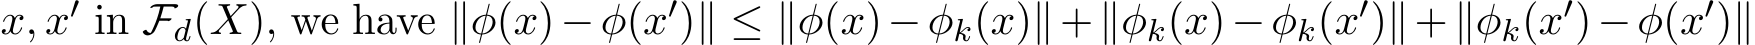  x, x′ in Fd(X), we have ∥φ(x)−φ(x′)∥ ≤ ∥φ(x)−φk(x)∥+∥φk(x)−φk(x′)∥+∥φk(x′)−φ(x′)∥